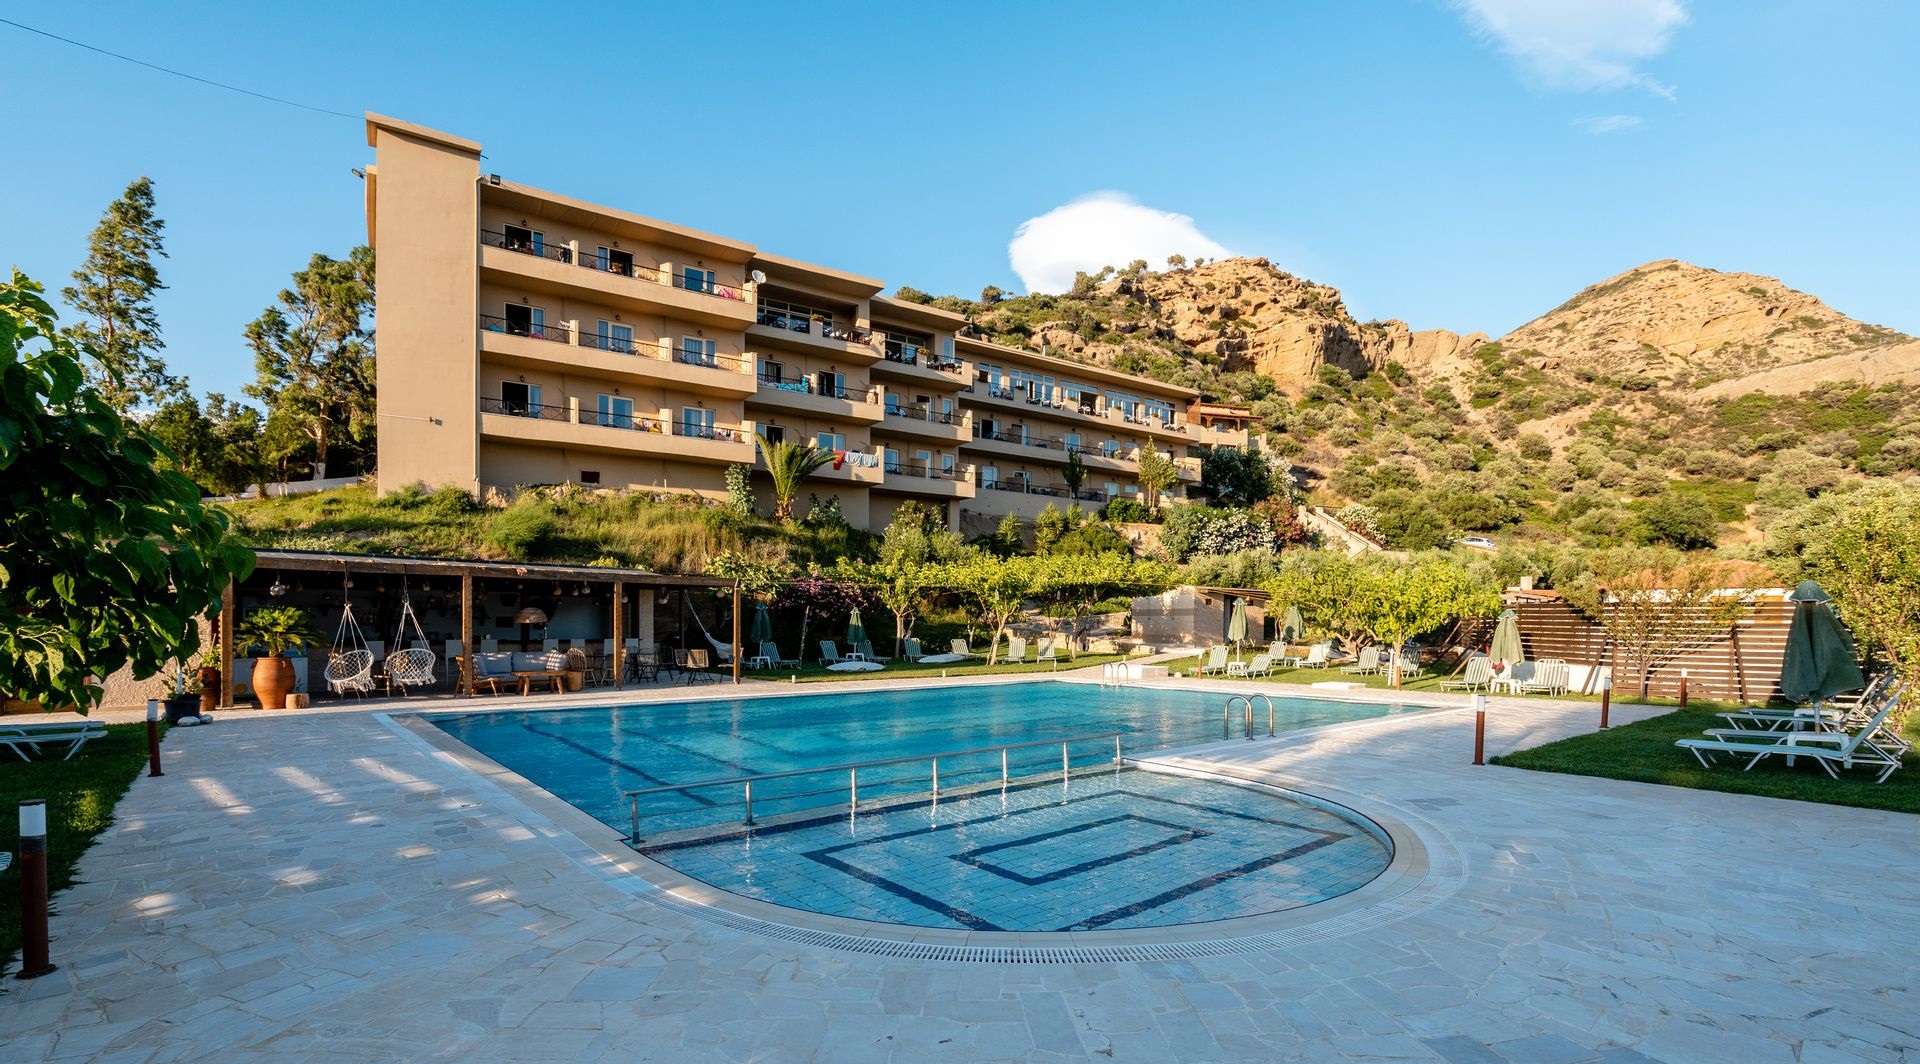 Villa Maxine Hotel - Αγία Γαλήνη, Κρήτη ✦ 2 Ημέρες